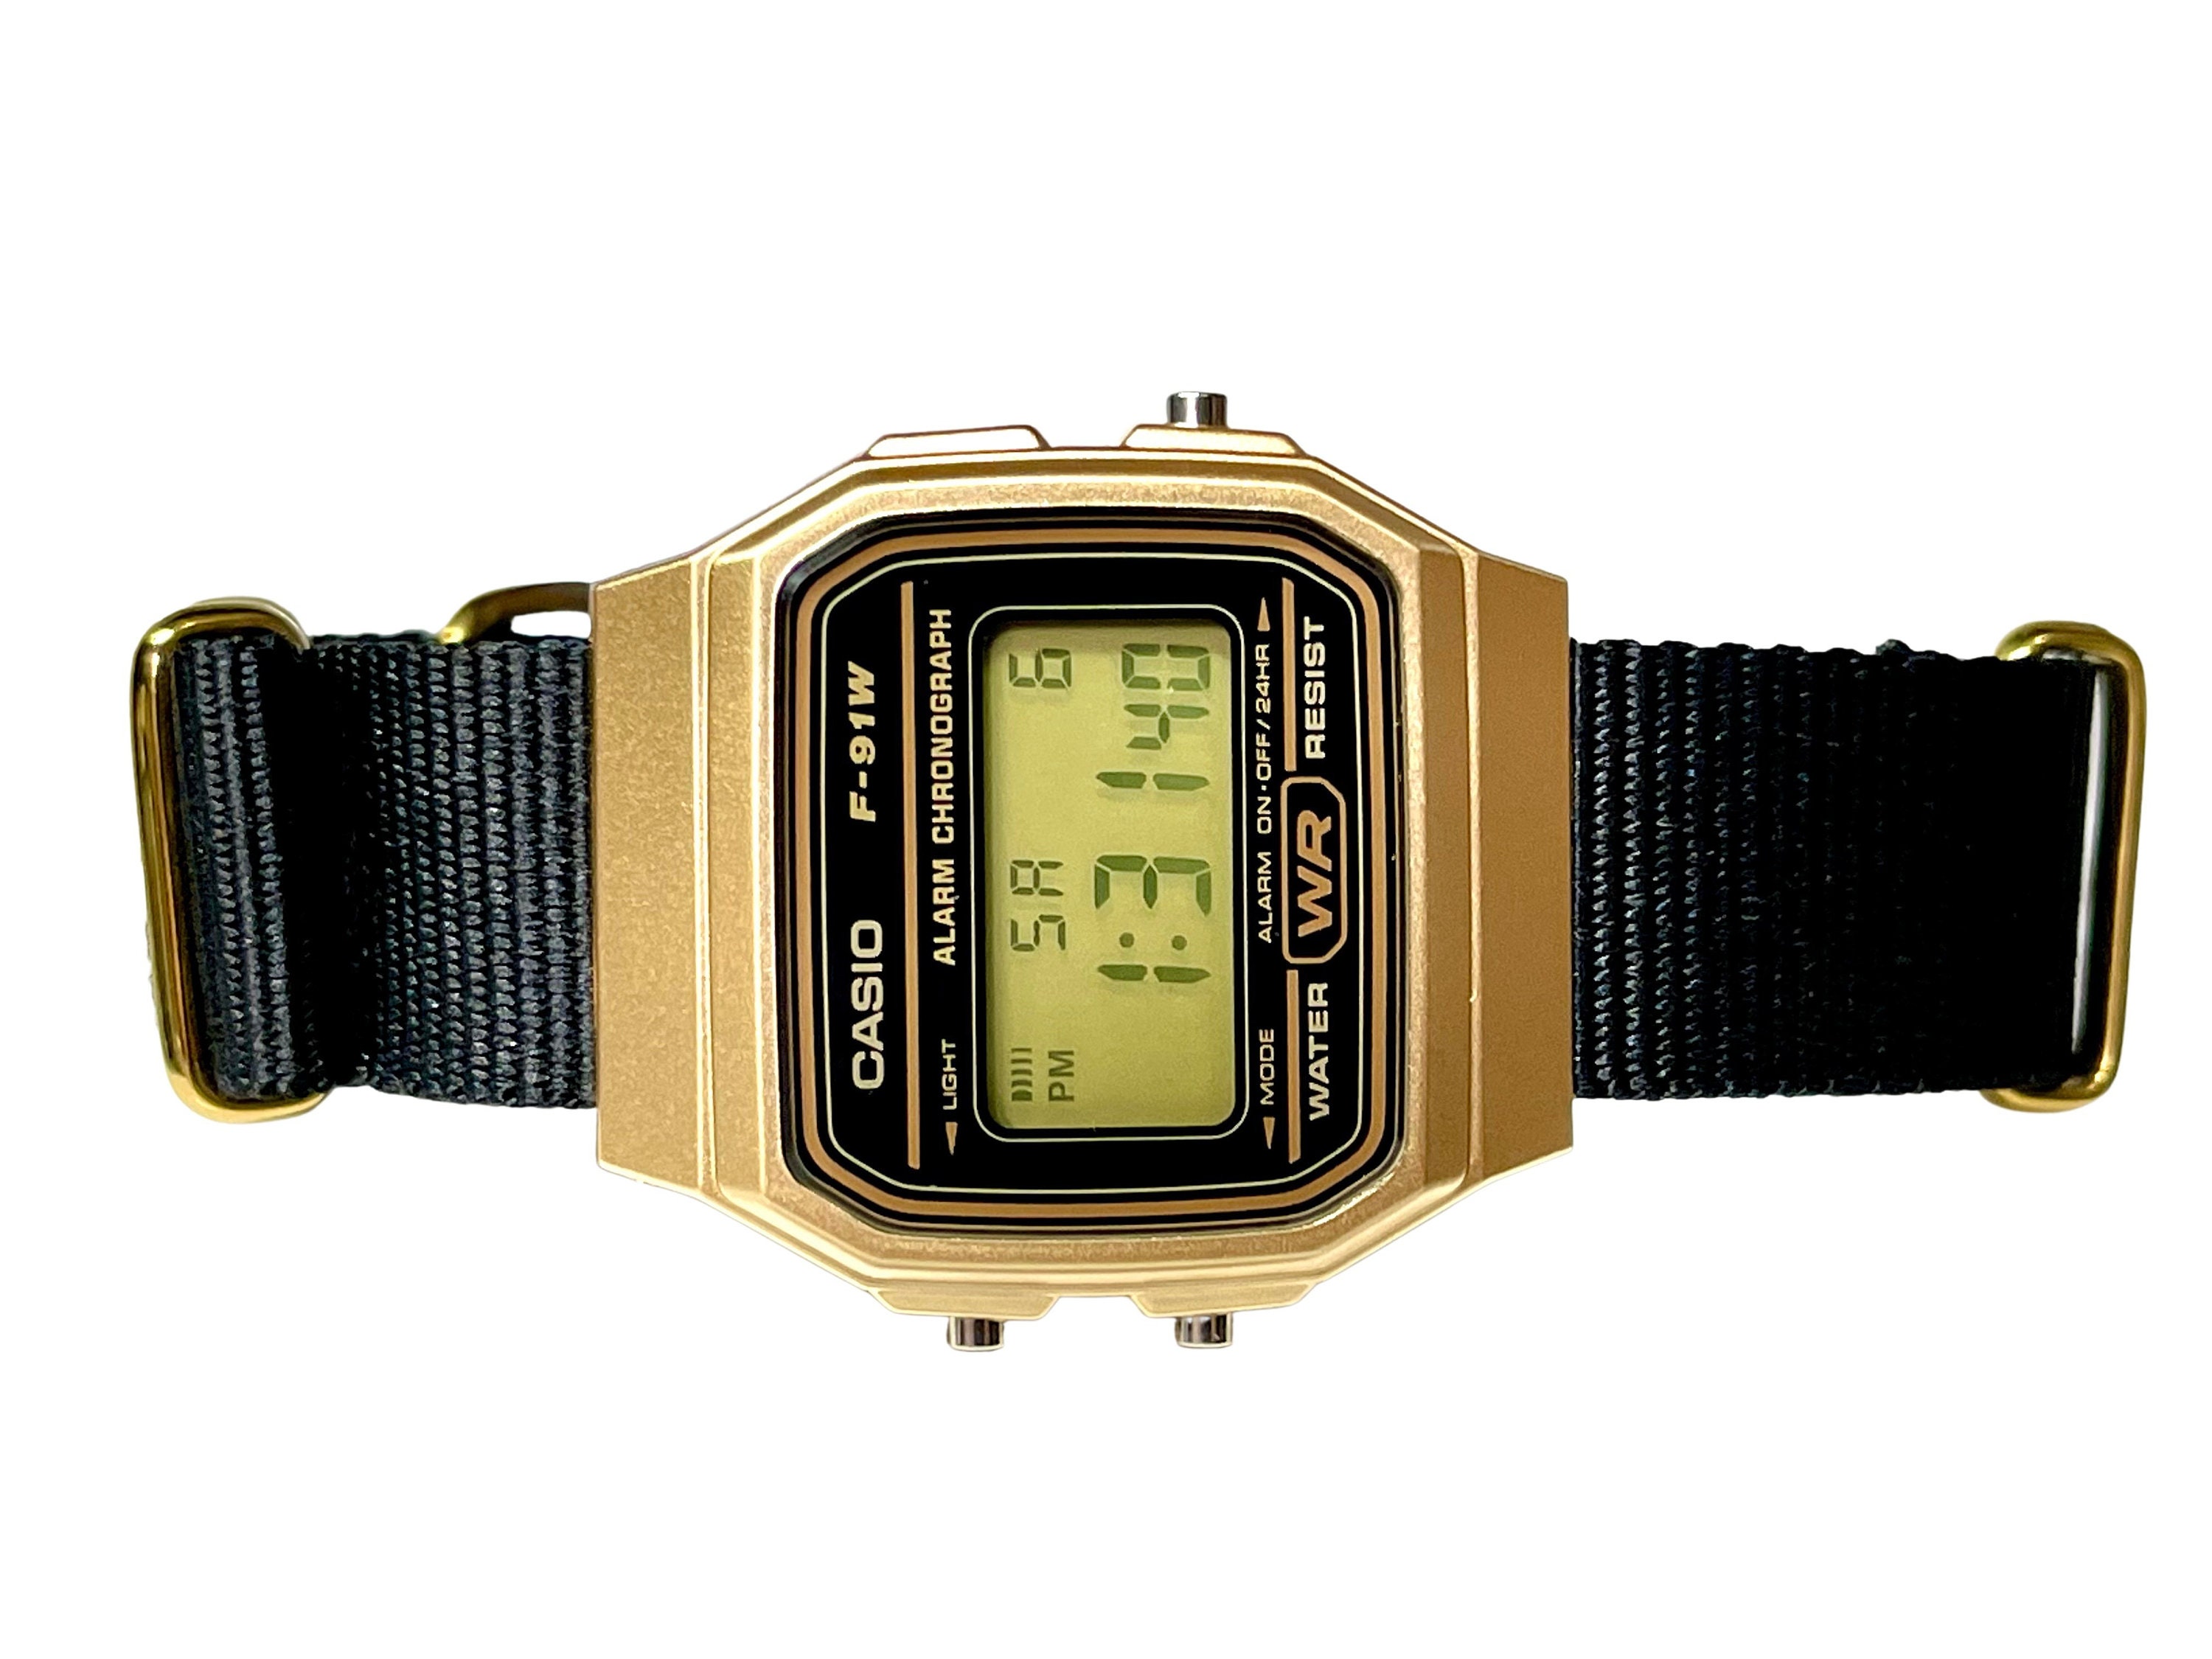 reloj casio dorado mujer - Buscar con Google  Casio gold watch, Casio  gold, Casio vintage watch